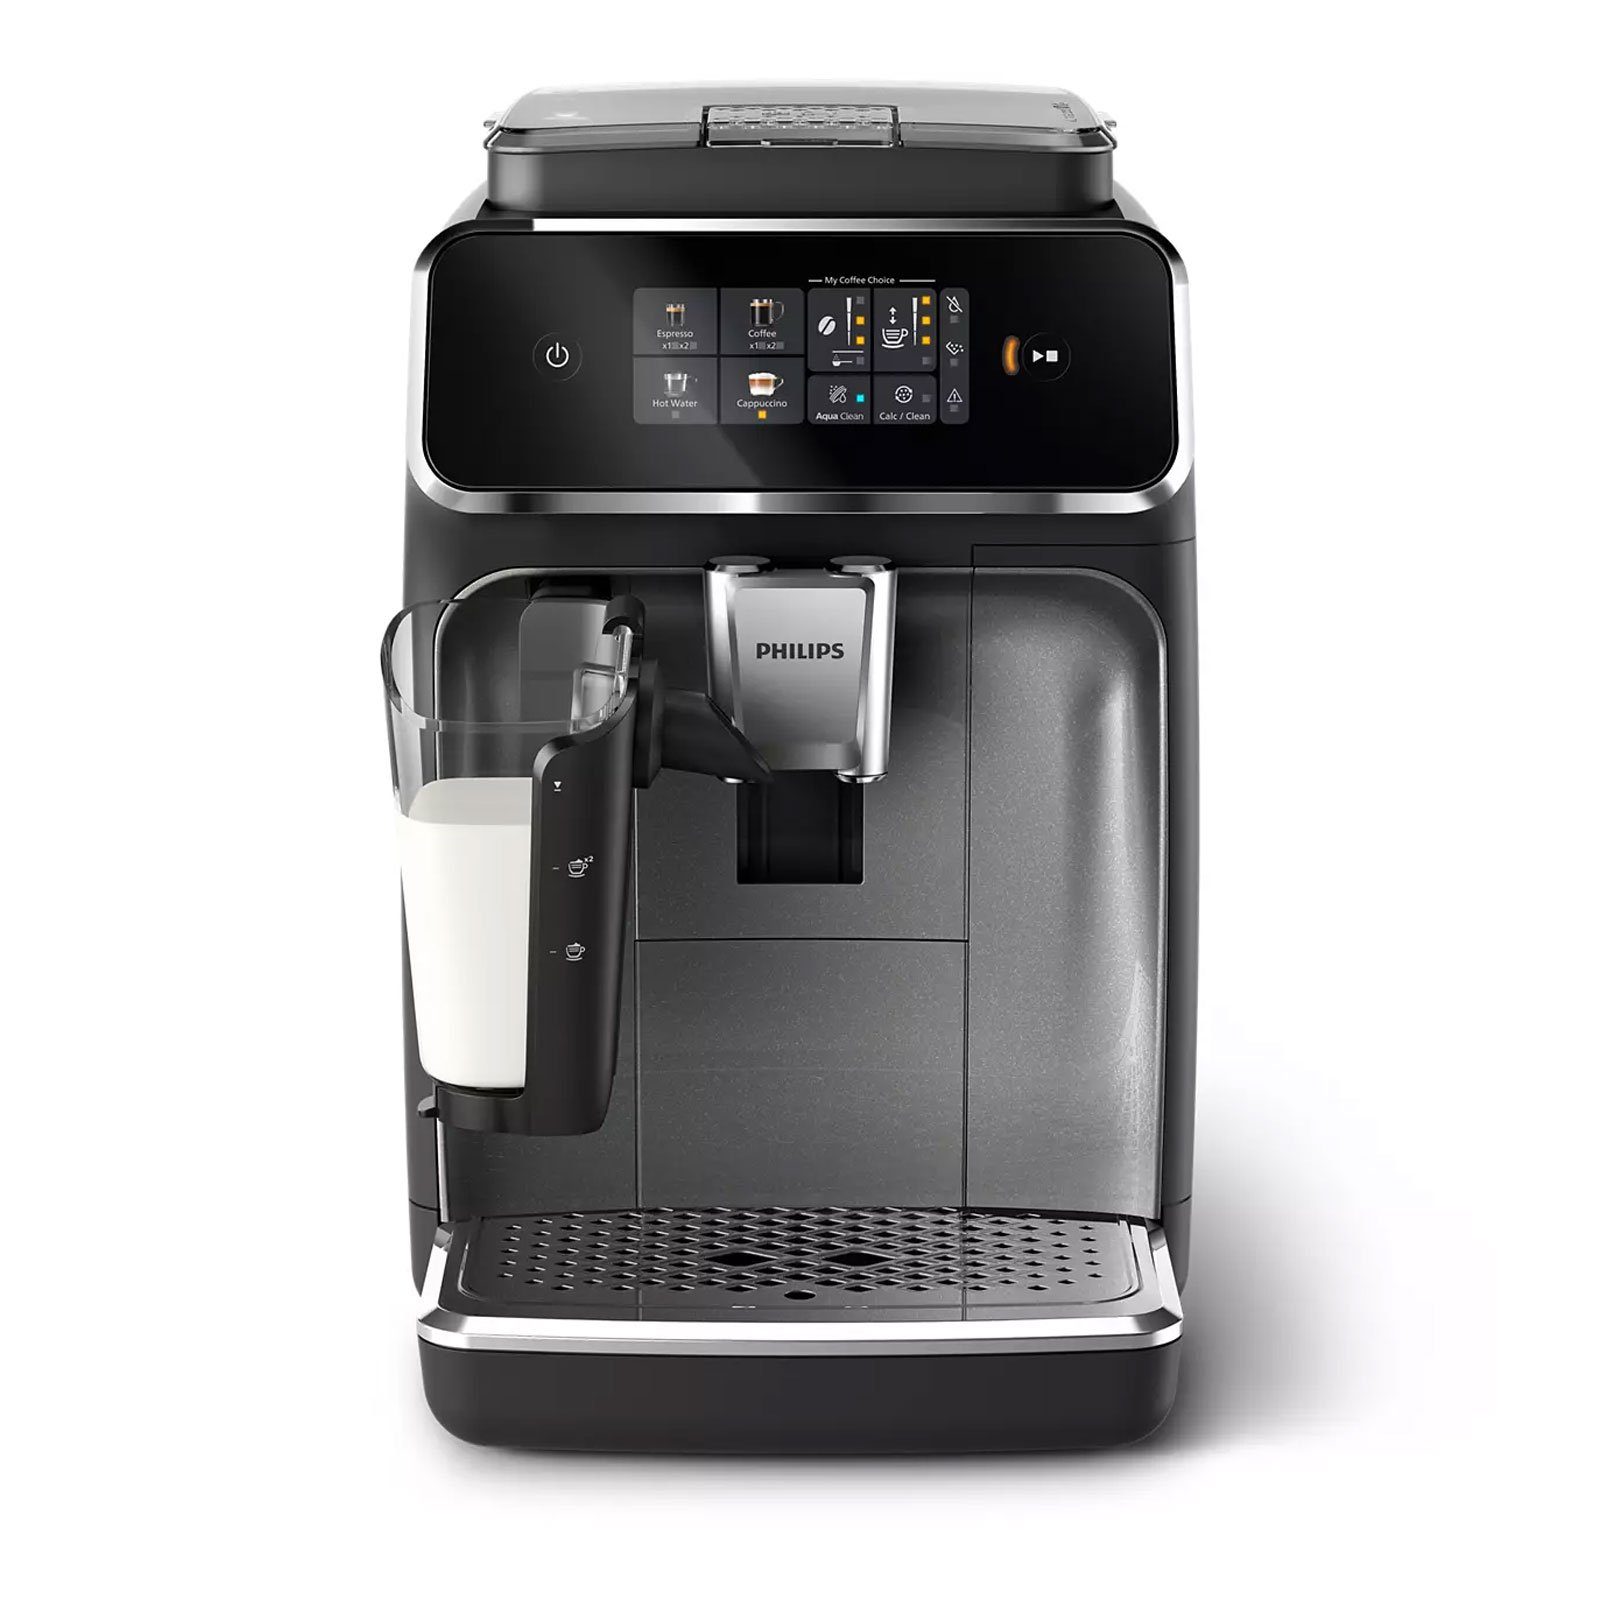 Philips Kaffeevollautomat Kaffeevollautomat 2300, herausnehmbar, verschiedene EP2339/40 Getränke Knopfdruck LatteGo Auf Series genießen Reinigung, Brühgruppe leichte 4 System